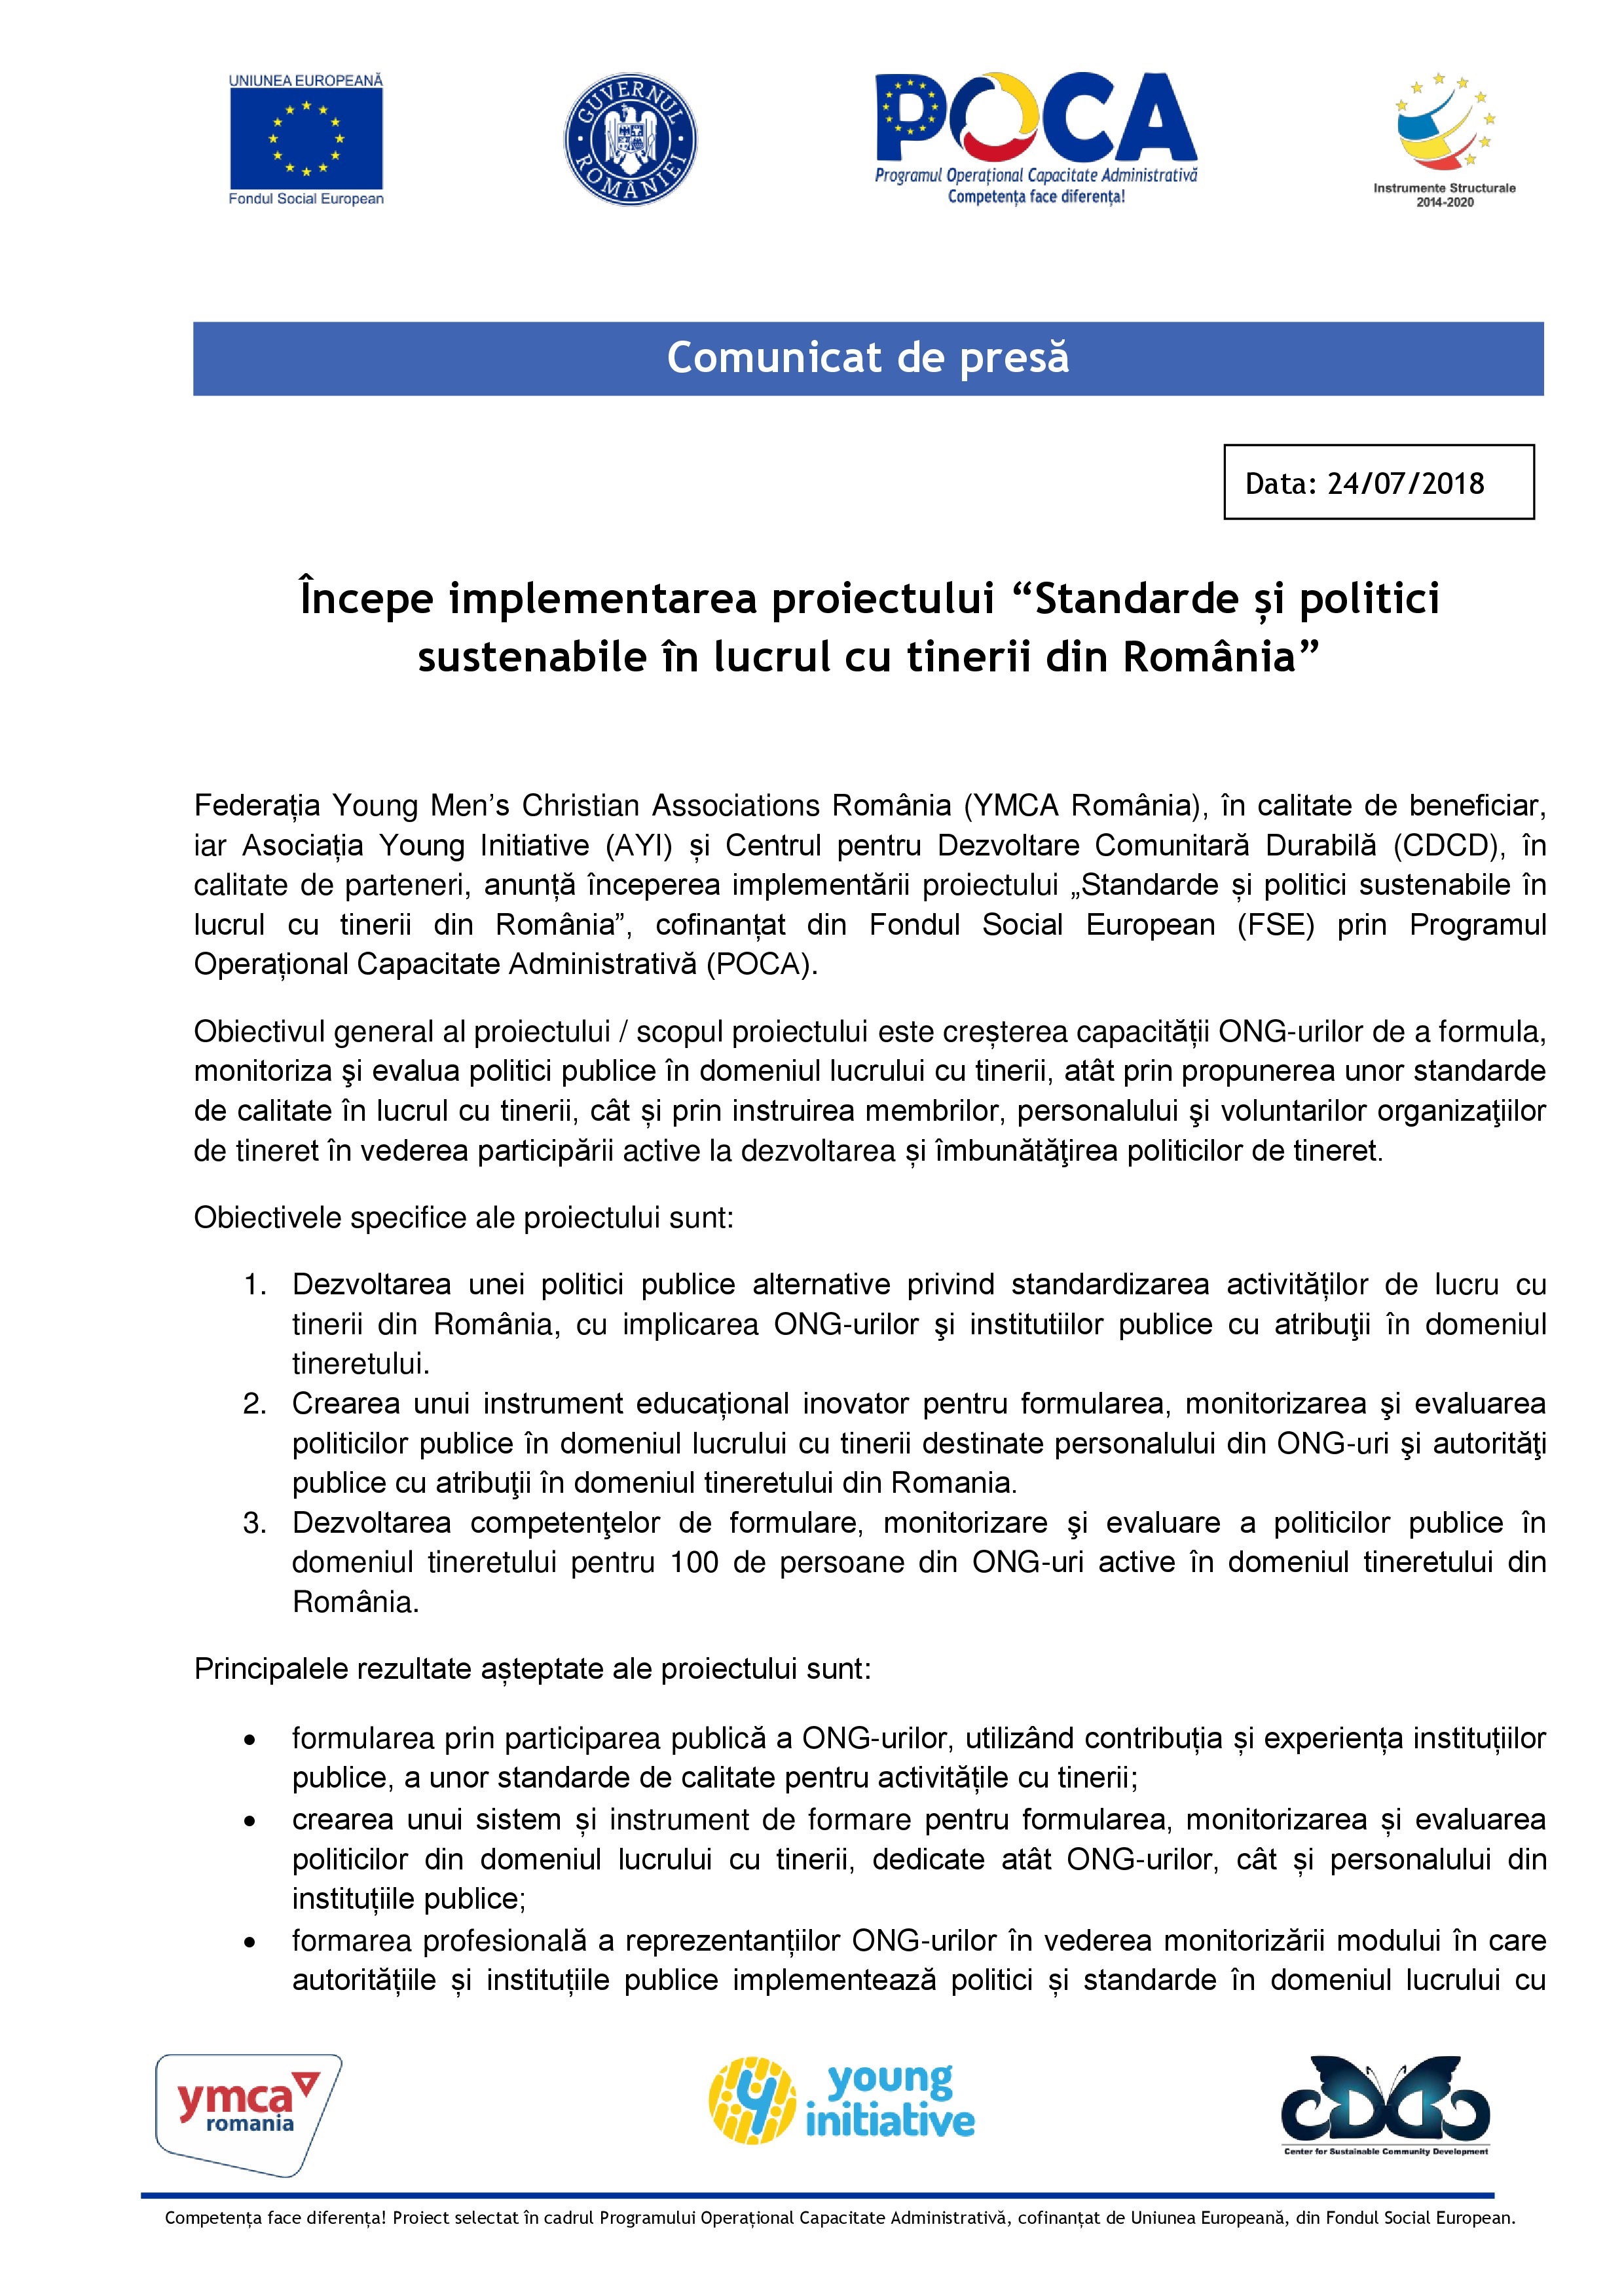 COMUNICAT DE PRESĂ: Demararea proiectului „Standarde și politici sustenabile în lucrul cu tinerii din România”